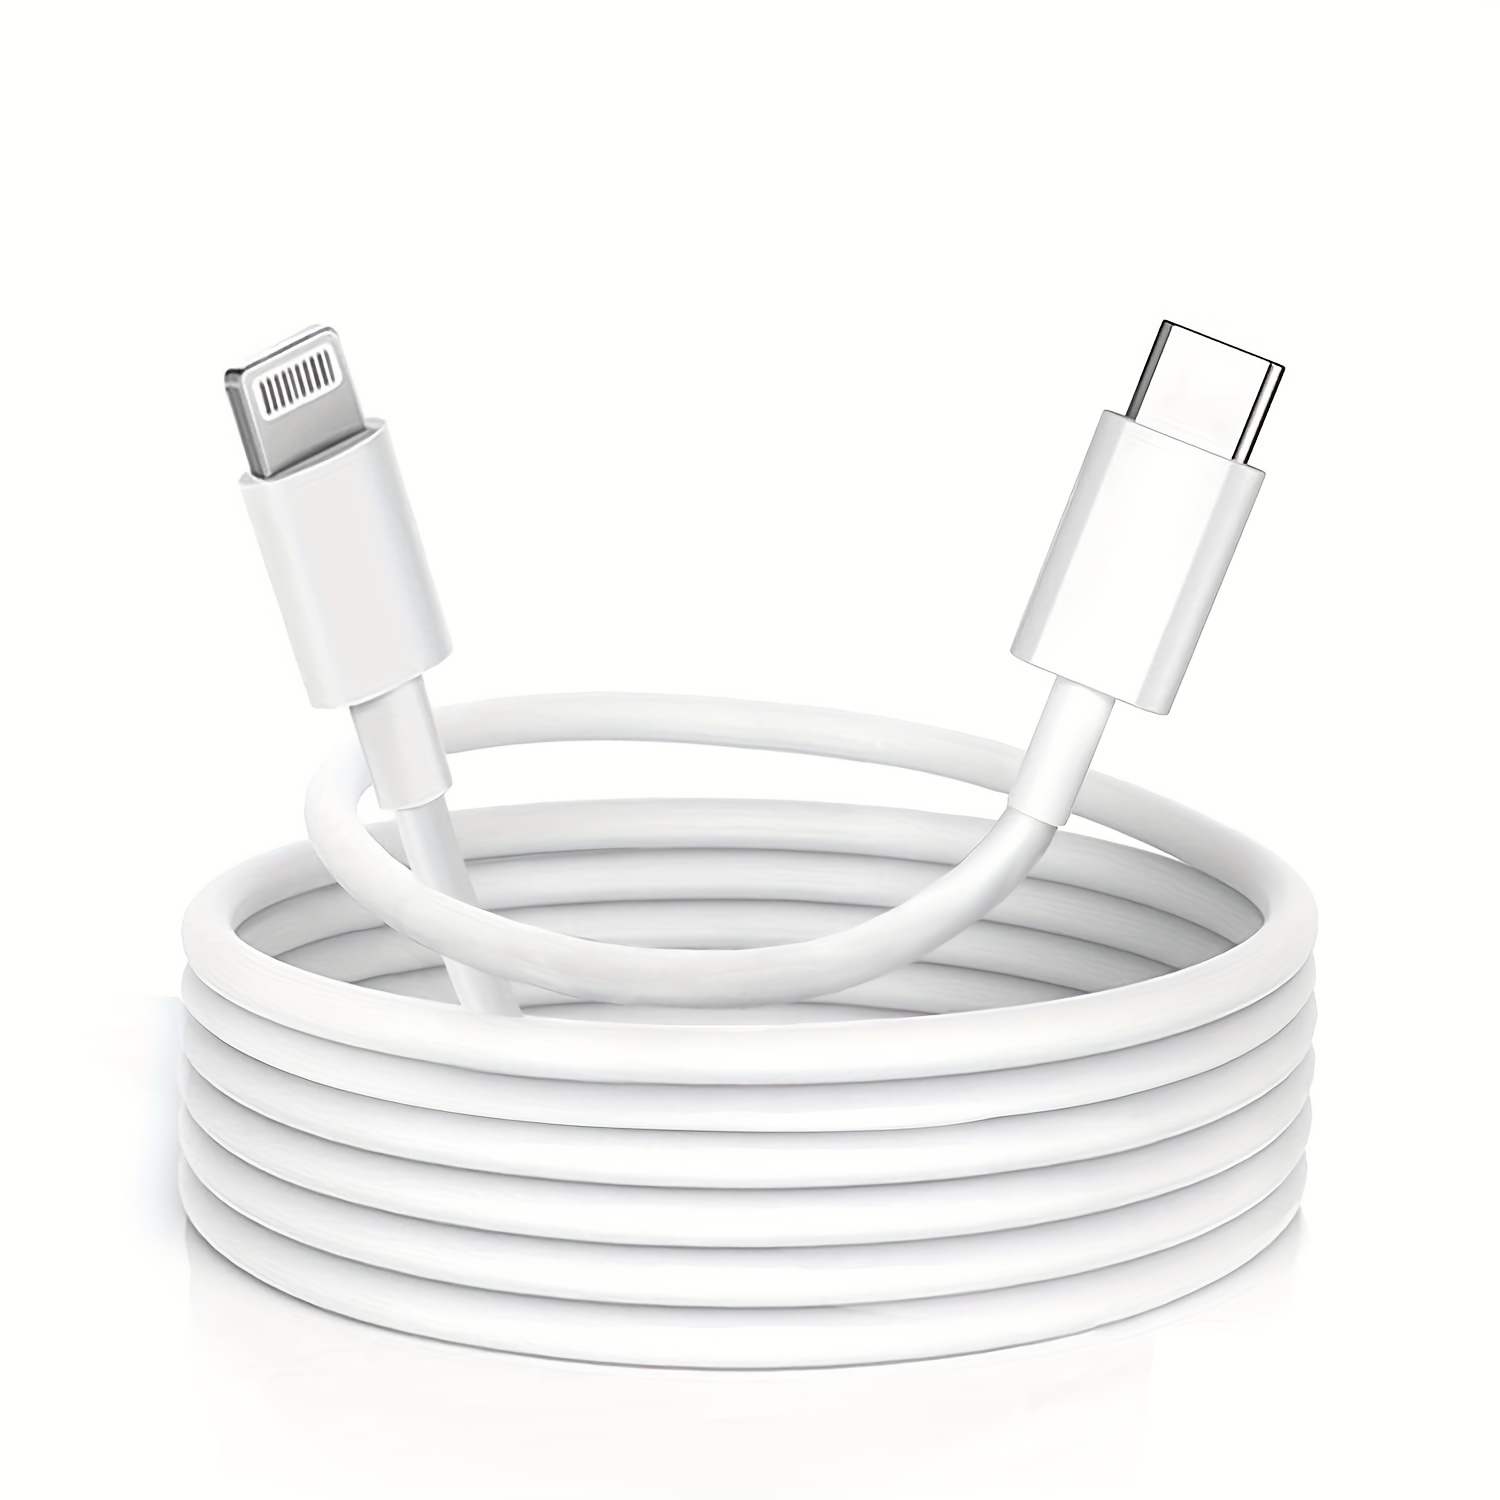 Câble de Charge USB-C 60W Original Apple, Tissé - Blanc 1m